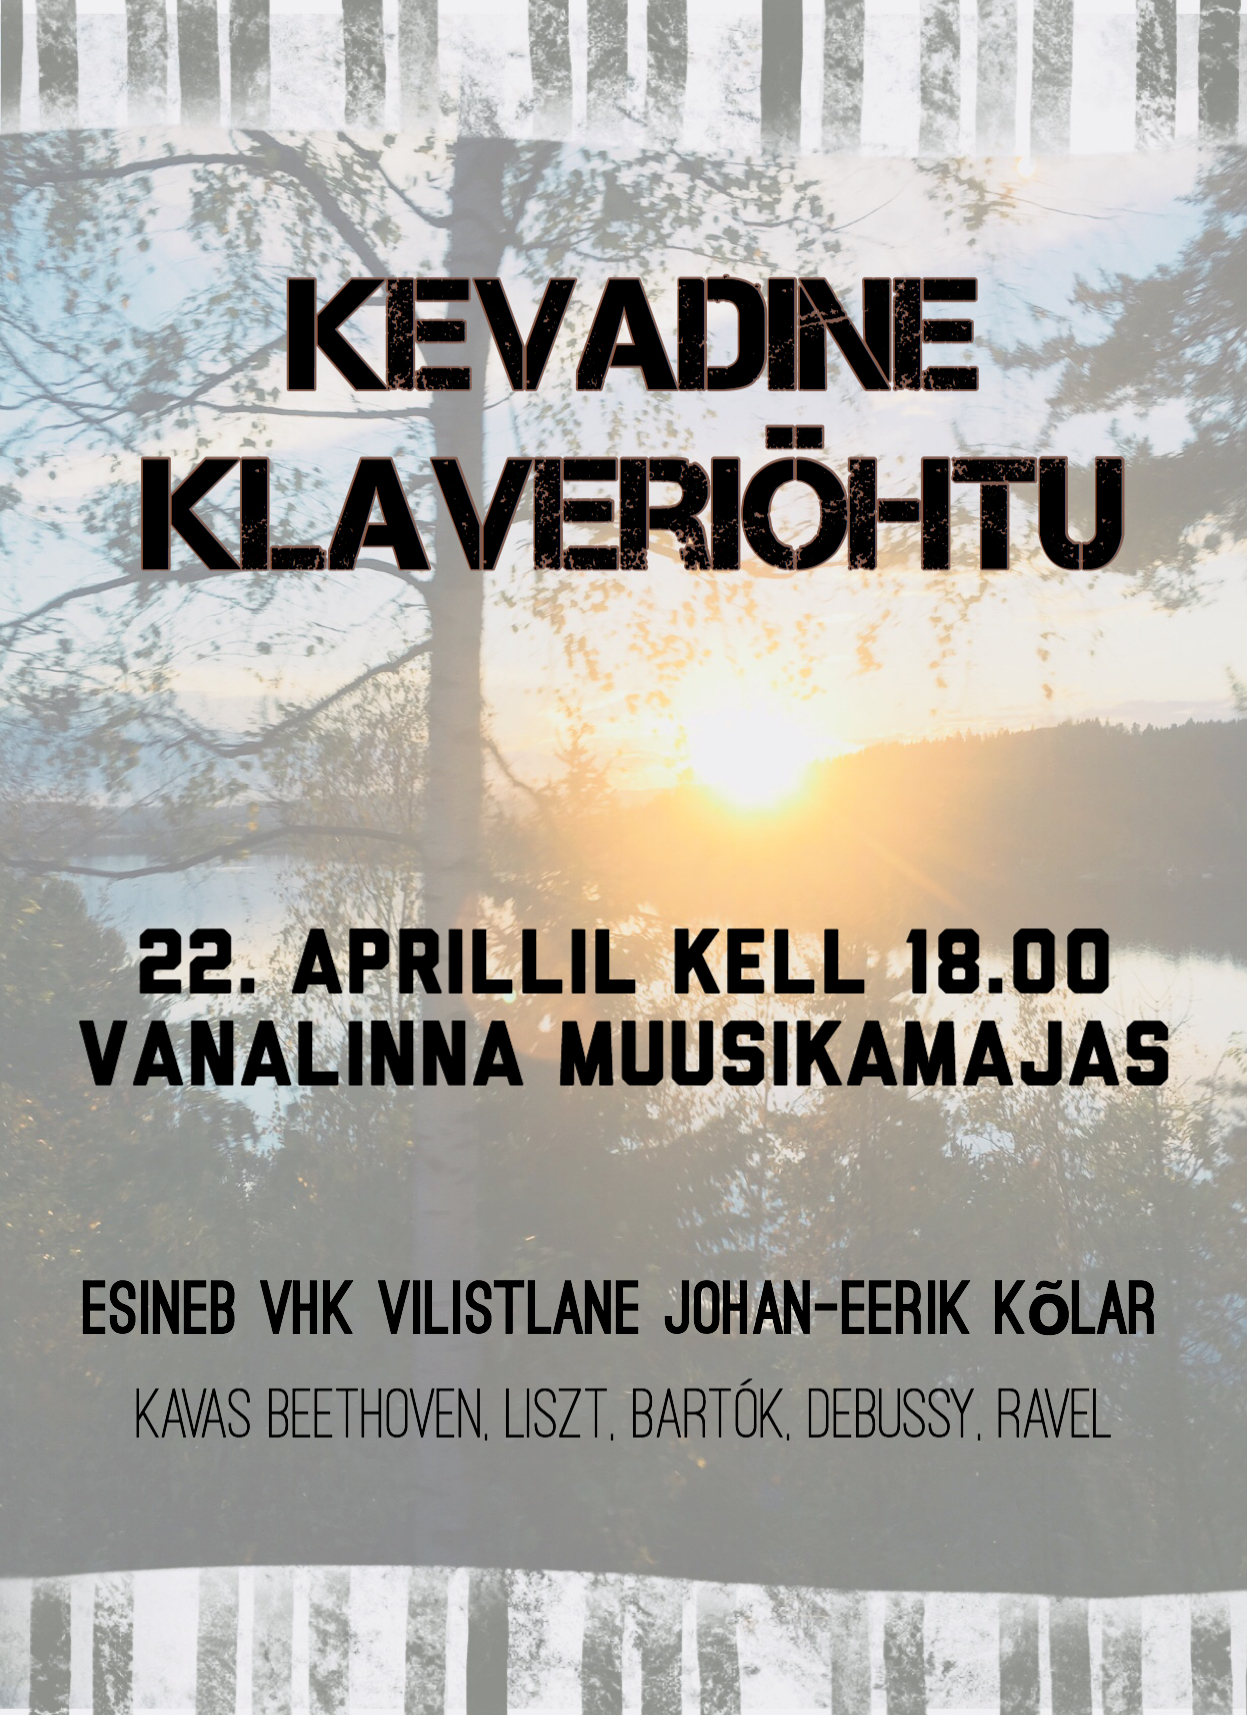 VHK vilistlase Johan-Eerik Kõlari klaveriõhtu 22. aprillil kell 18.00 Vanalinna Muusikamajas